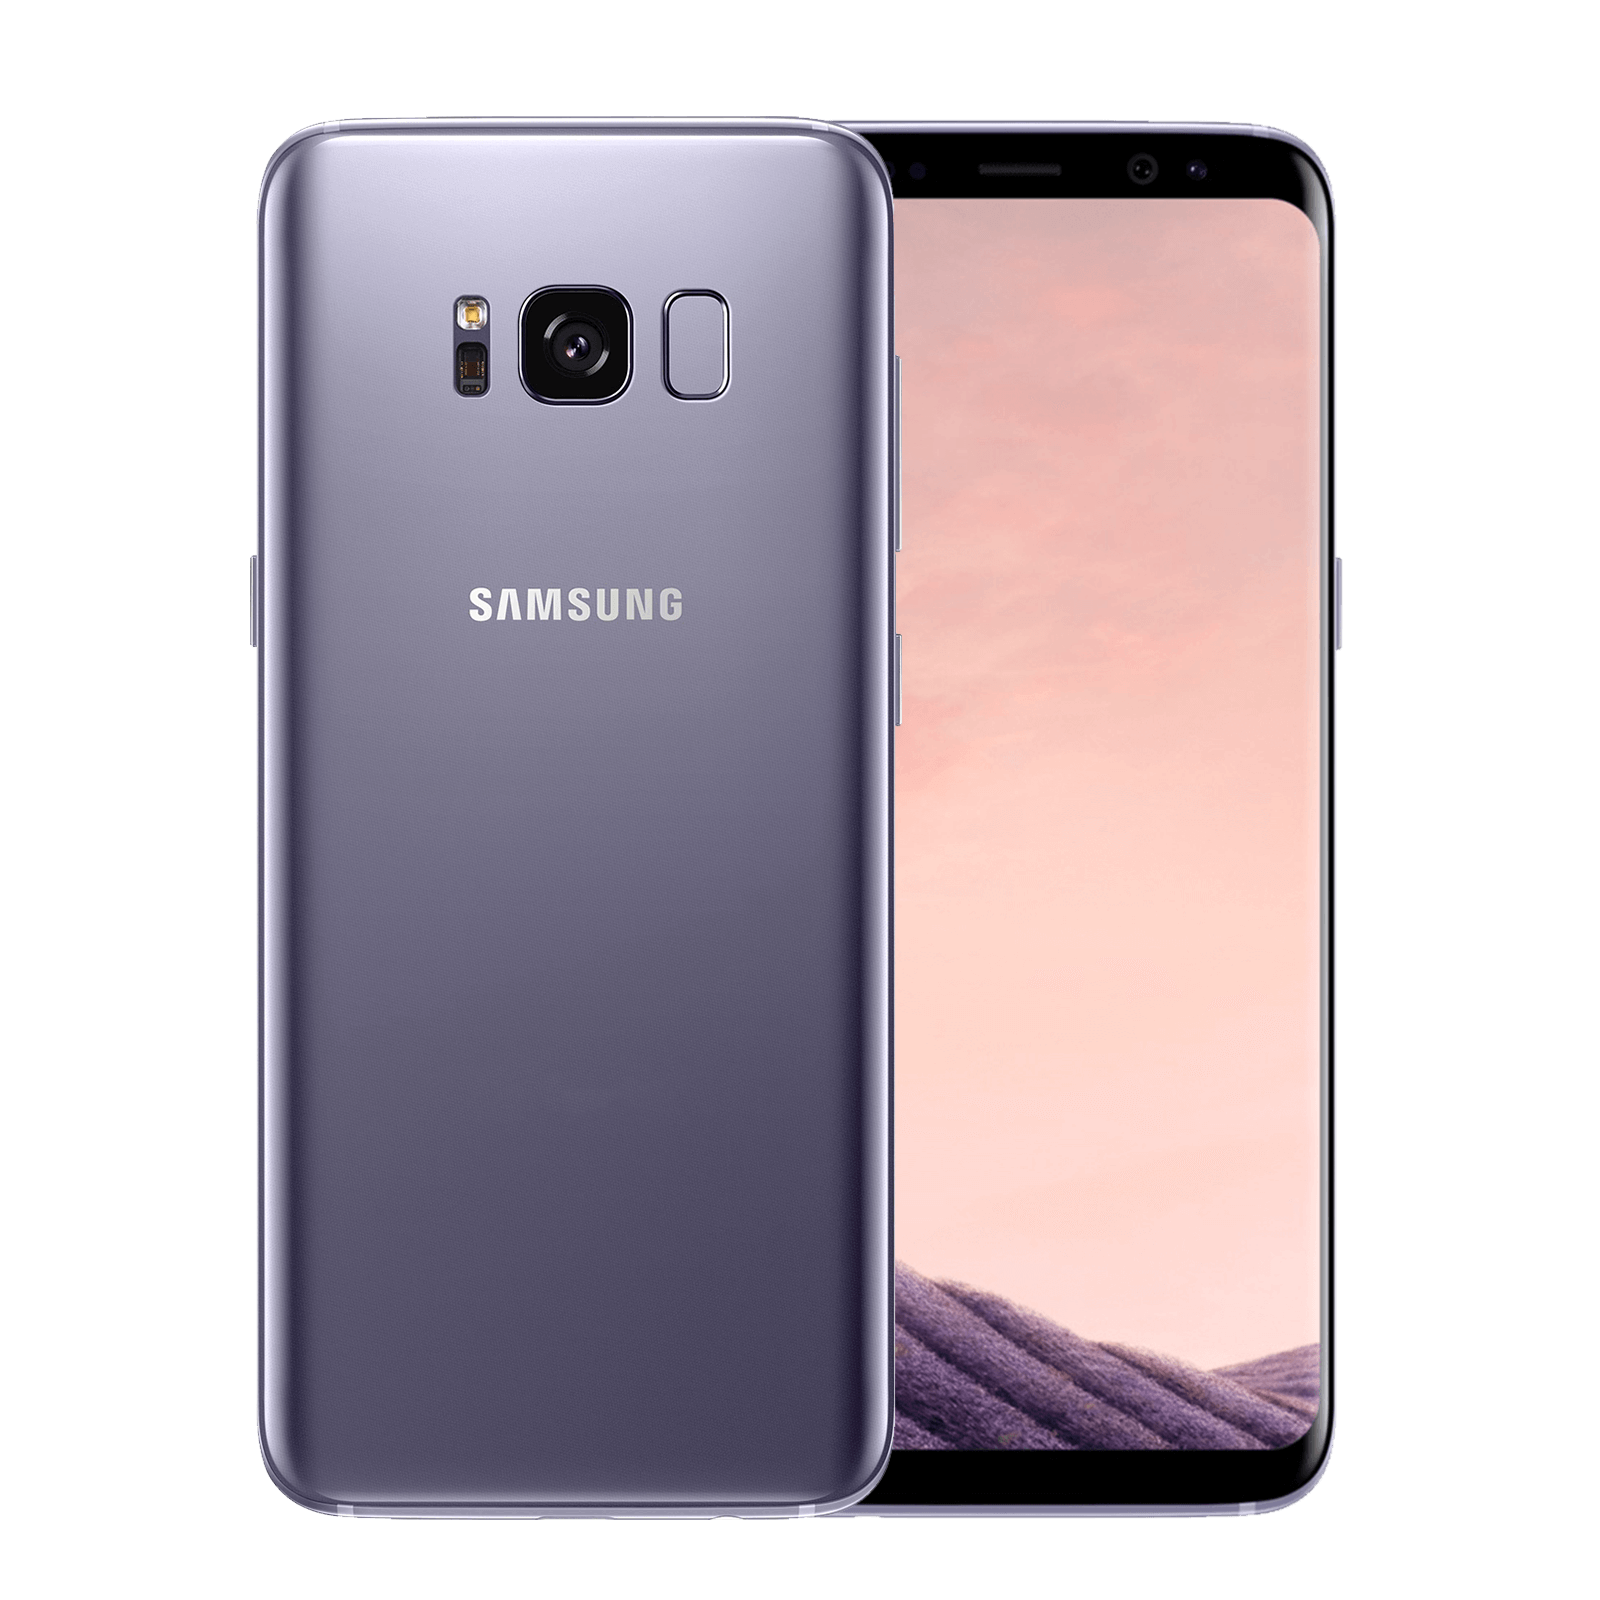 Samsung Galaxy S8 64GB Gray G950F Fair - Unlocked 64GB Grey Fair